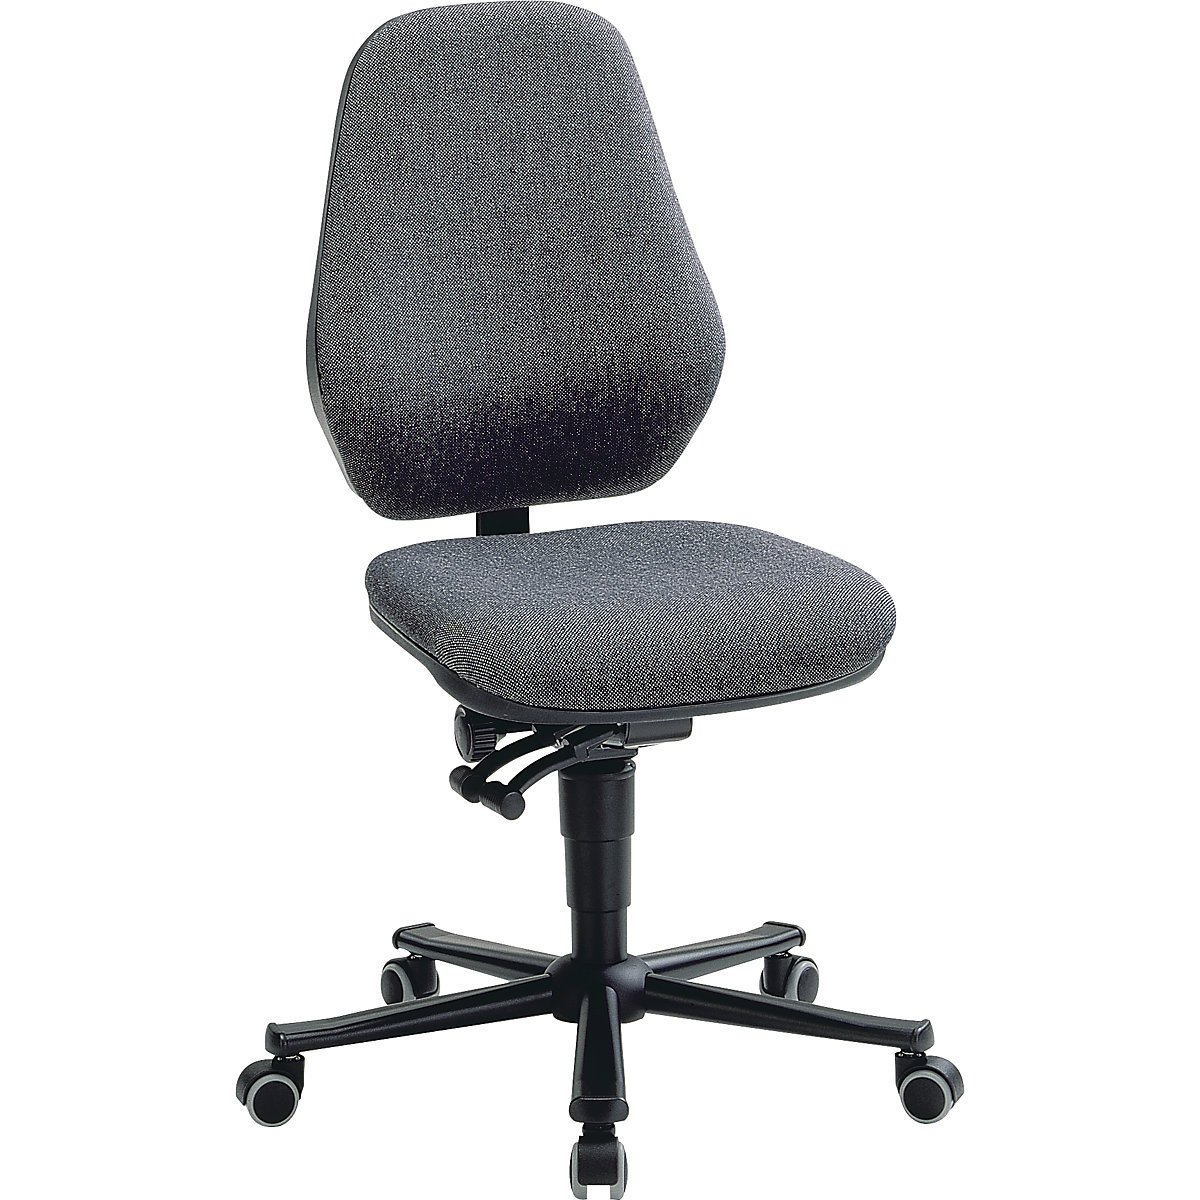 Pracovní židle – bimos